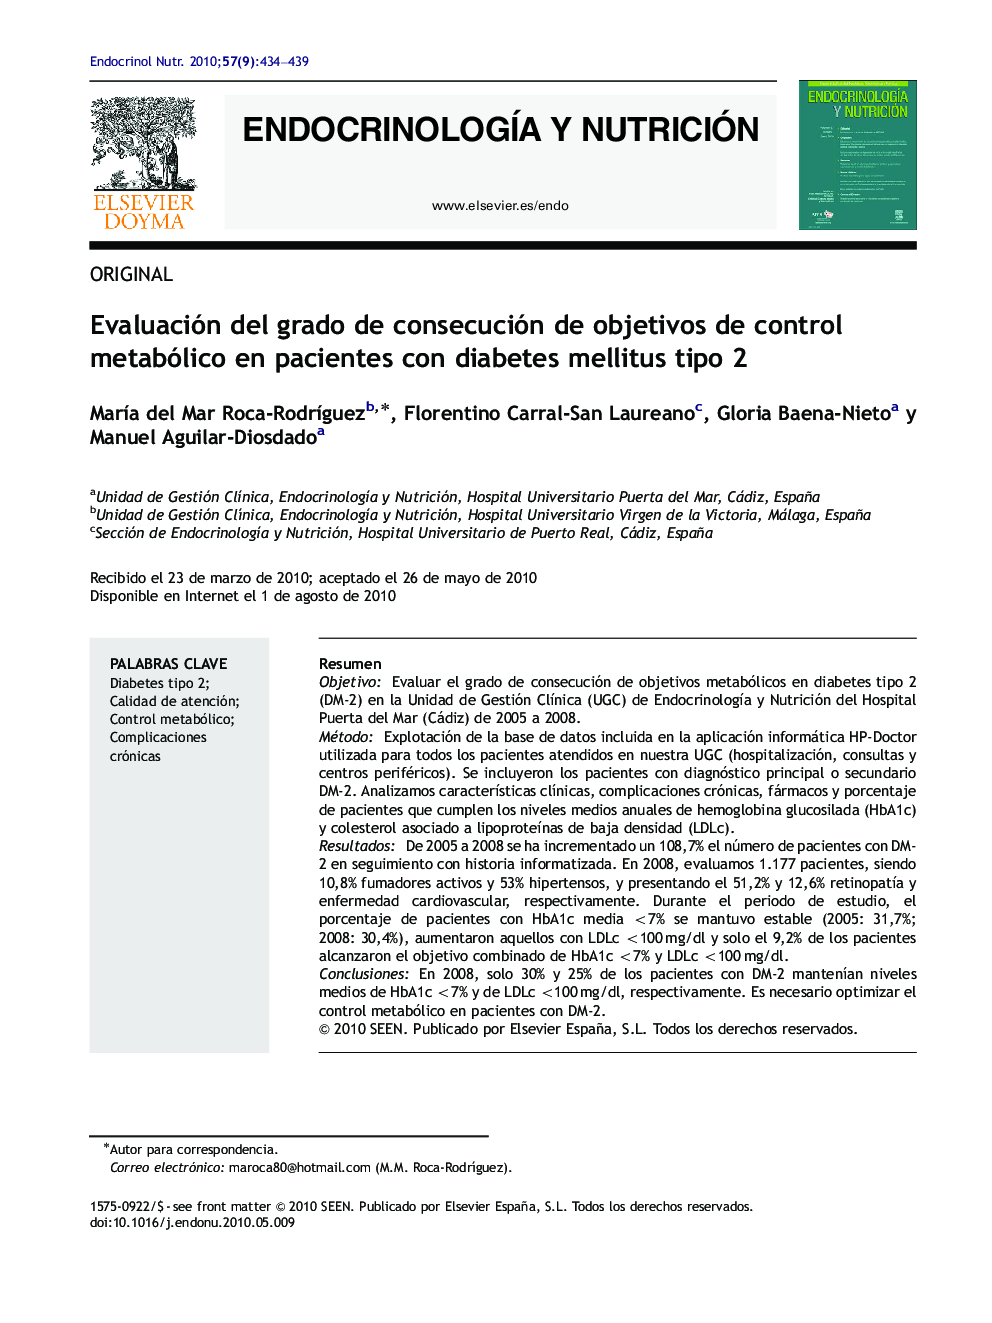 Evaluación del grado de consecución de objetivos de control metabólico en pacientes con diabetes mellitus tipo 2